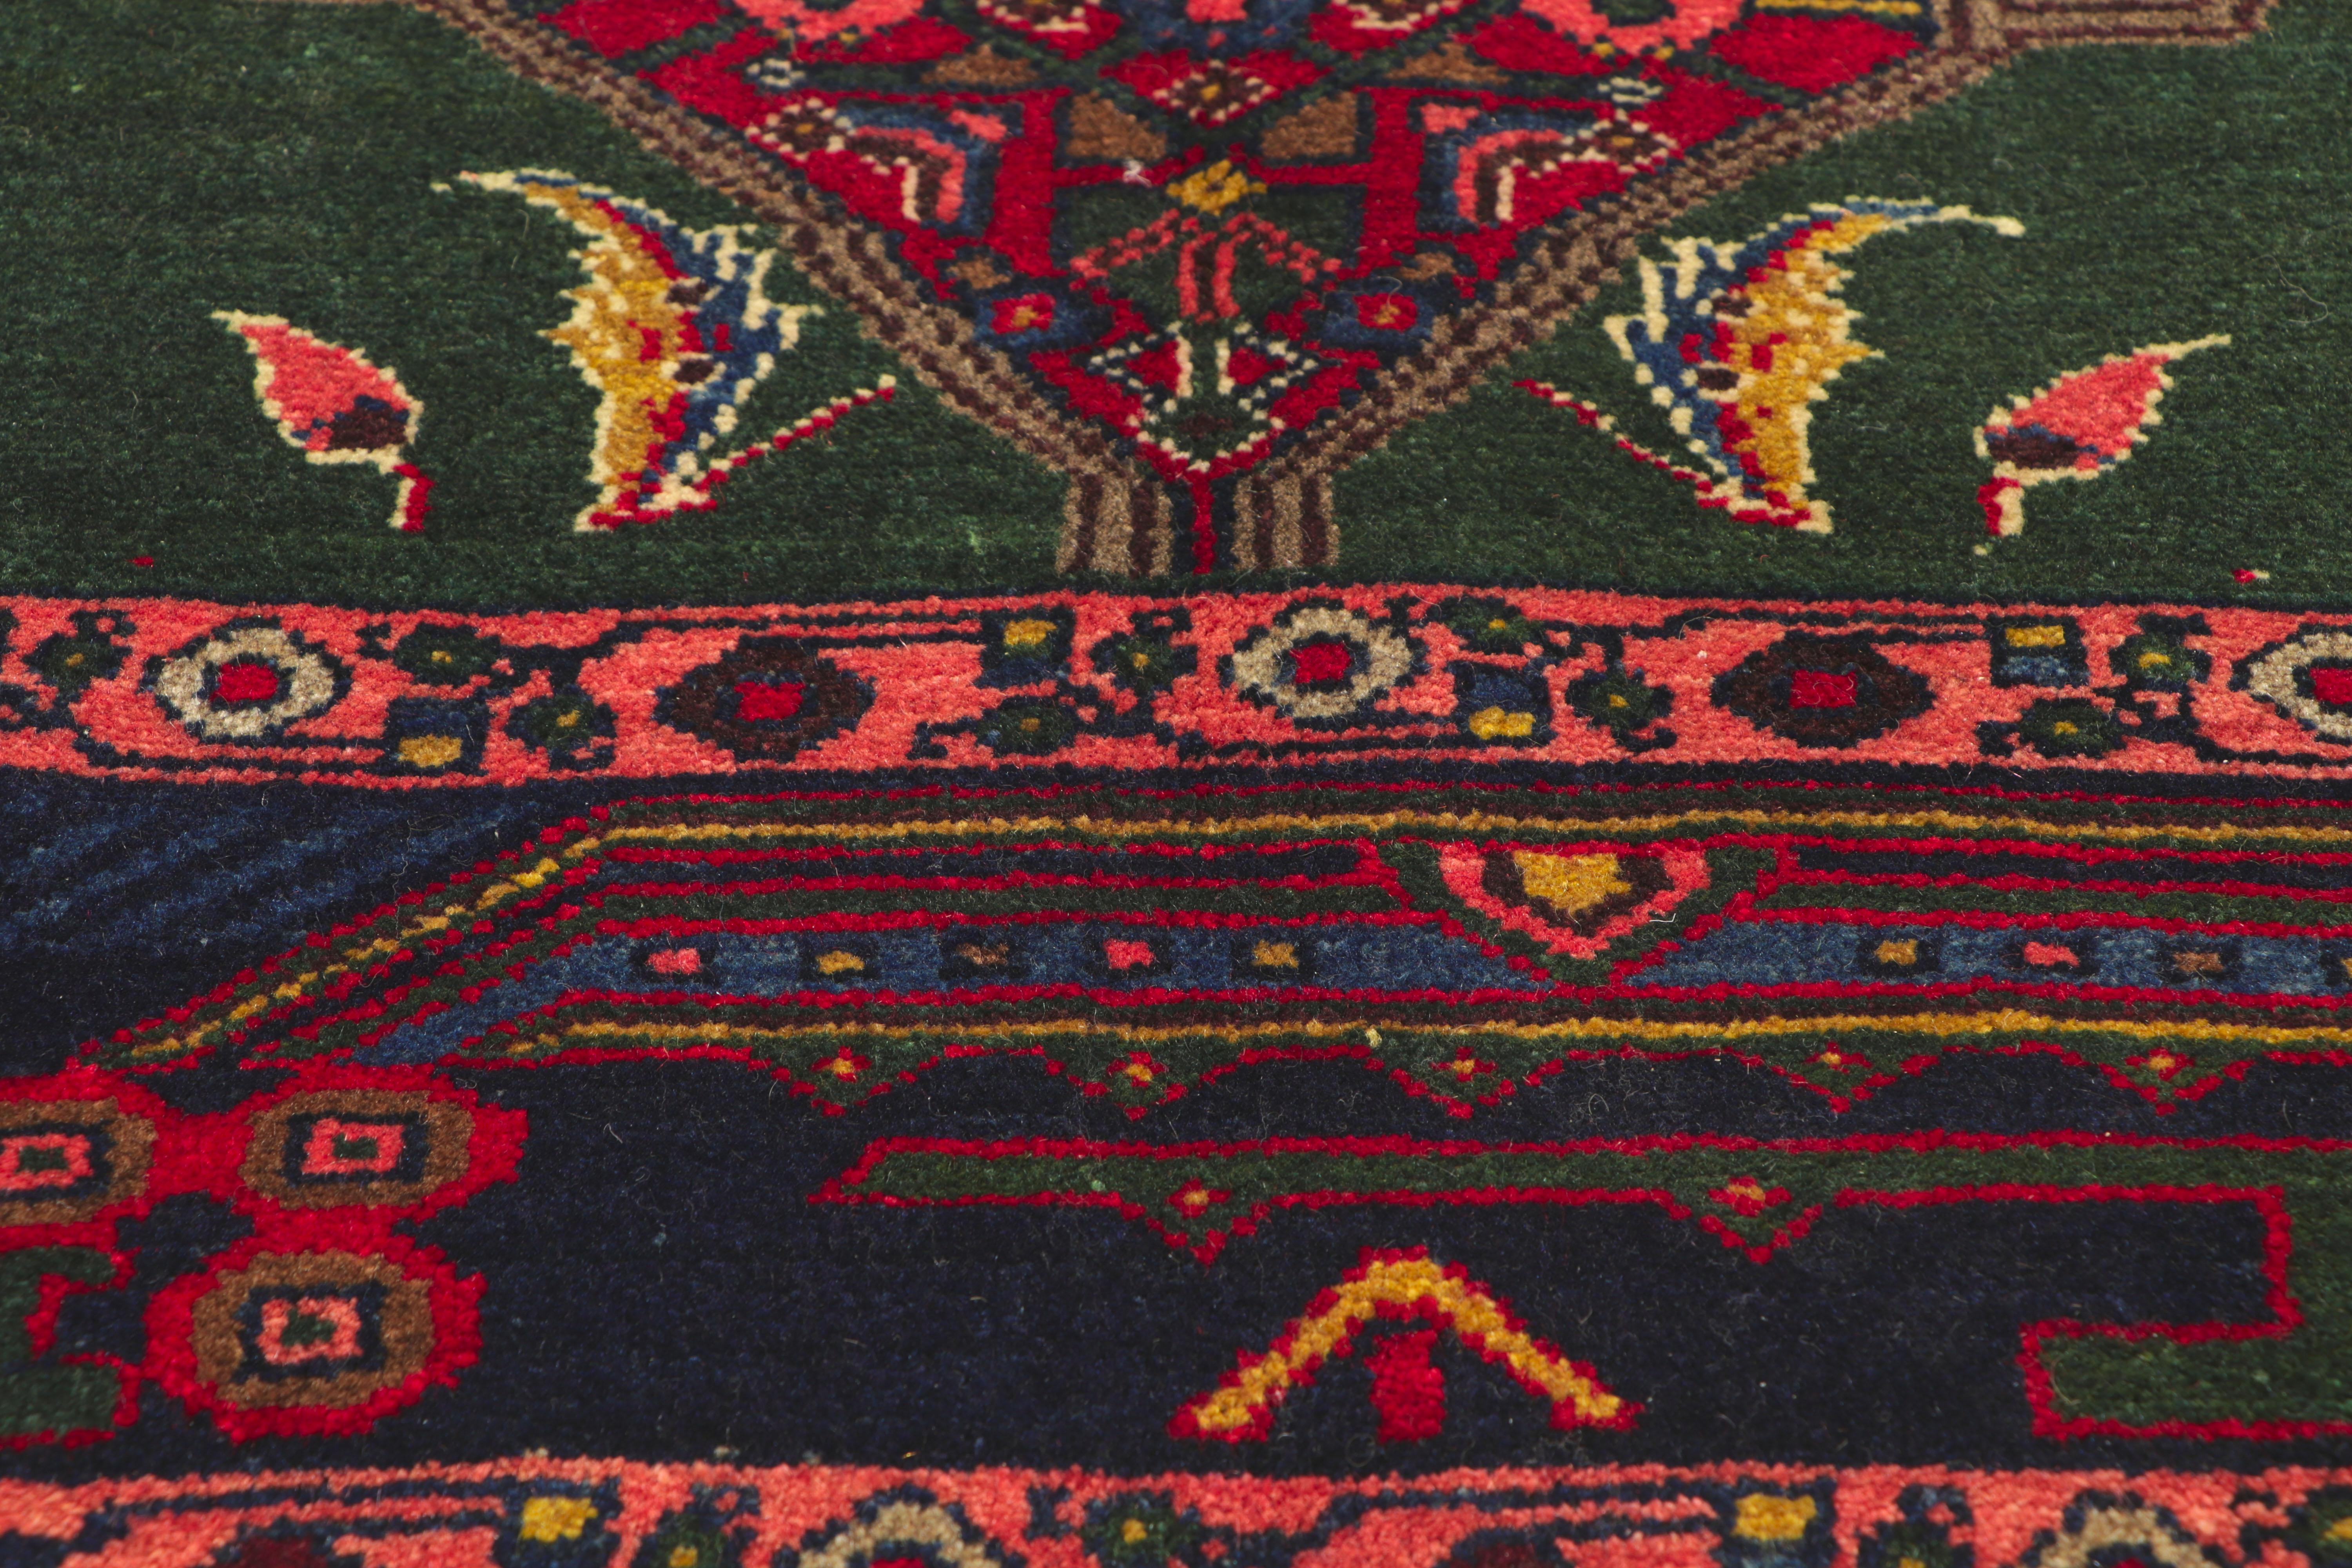 76126 Vintage Persisch Hamadan Teppich, 05'04 X 07'09. 
Mit seinem zeitlosen Stil, seinen unglaublichen Details und seiner Textur ist dieser handgeknüpfte persische Hamadan-Teppich aus Wolle im Vintage-Stil eine fesselnde Vision gewebter Schönheit.